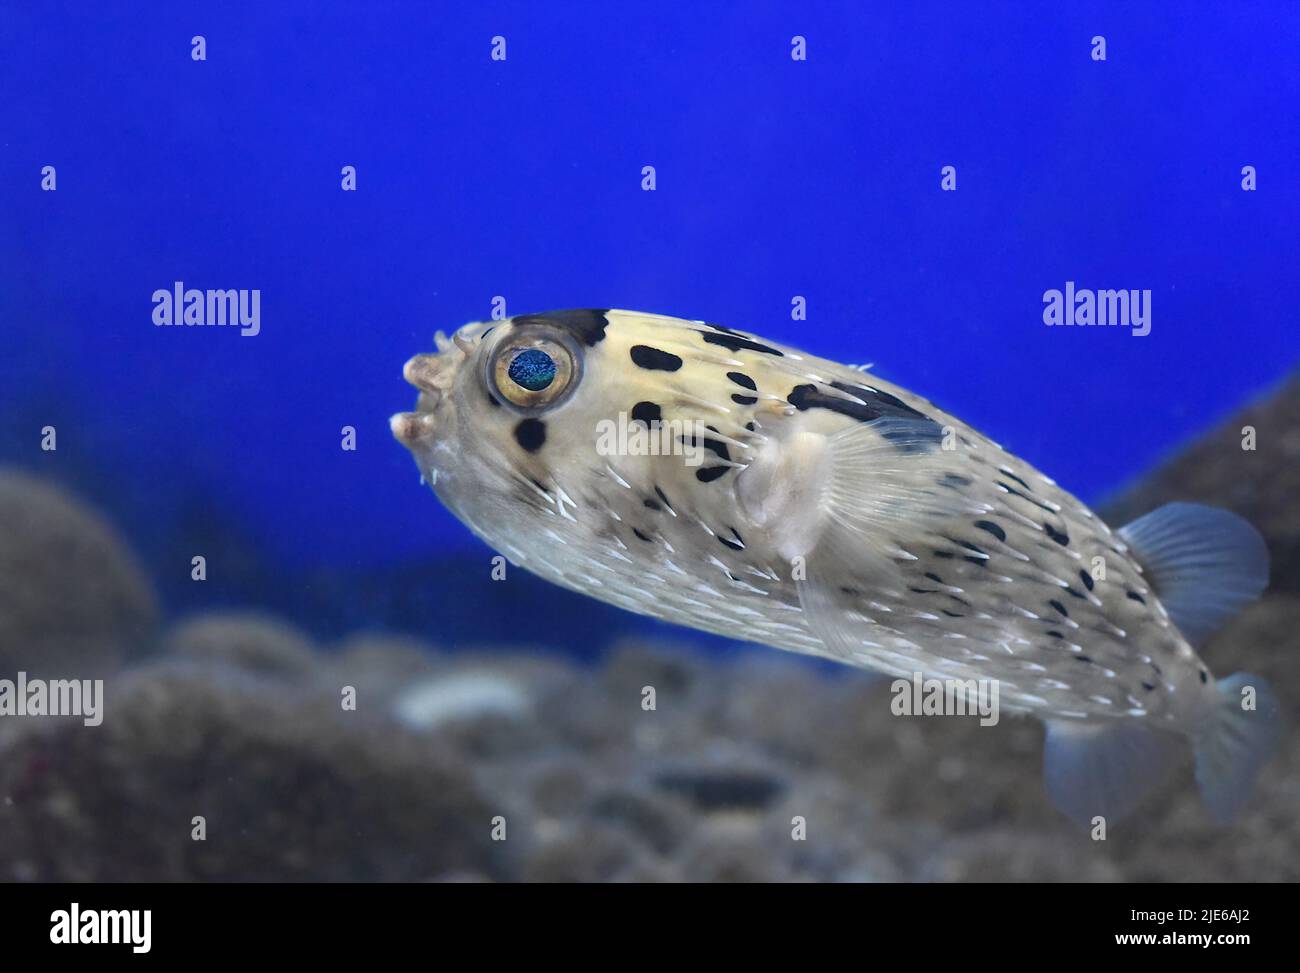 Puffer fish in aquarium close-up Stock Photo